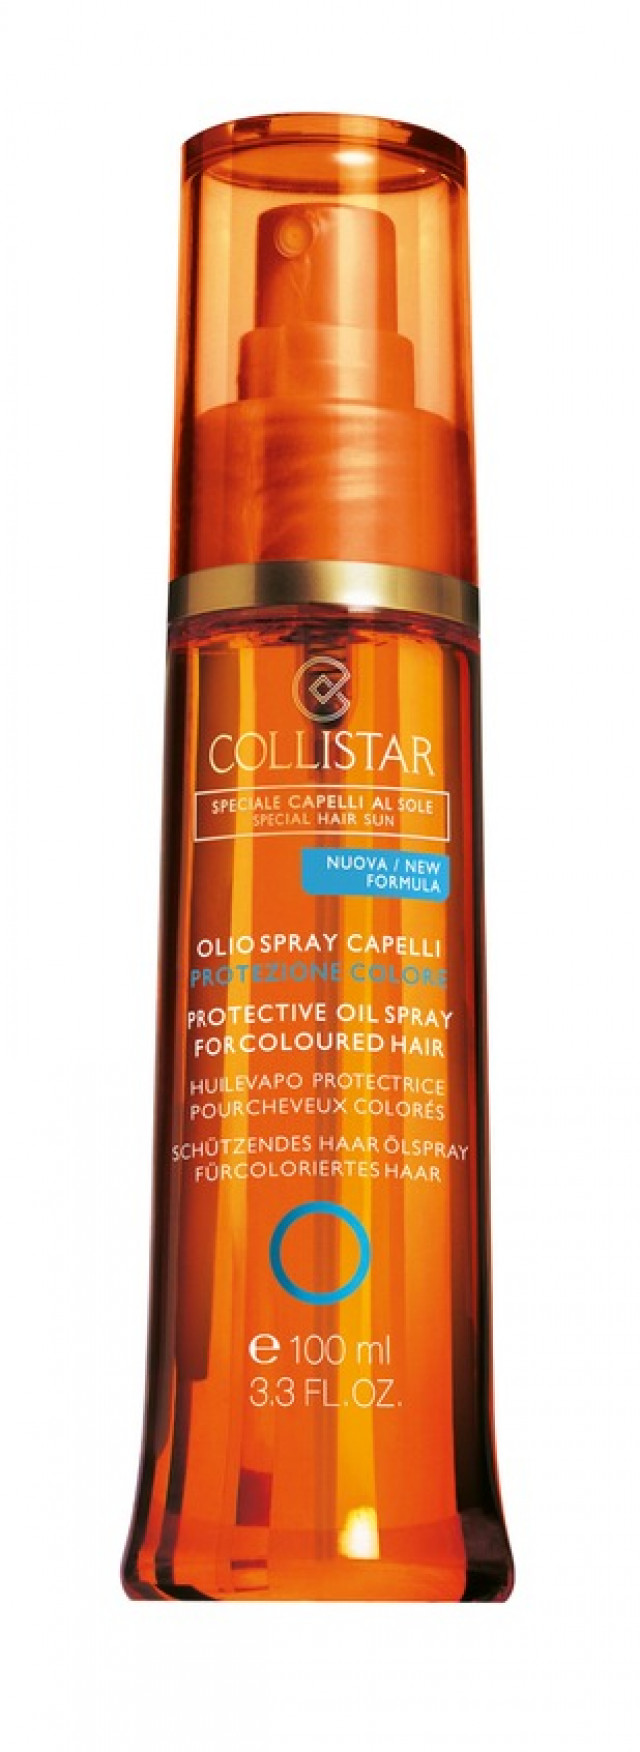 Olio spray capelli protezione colore